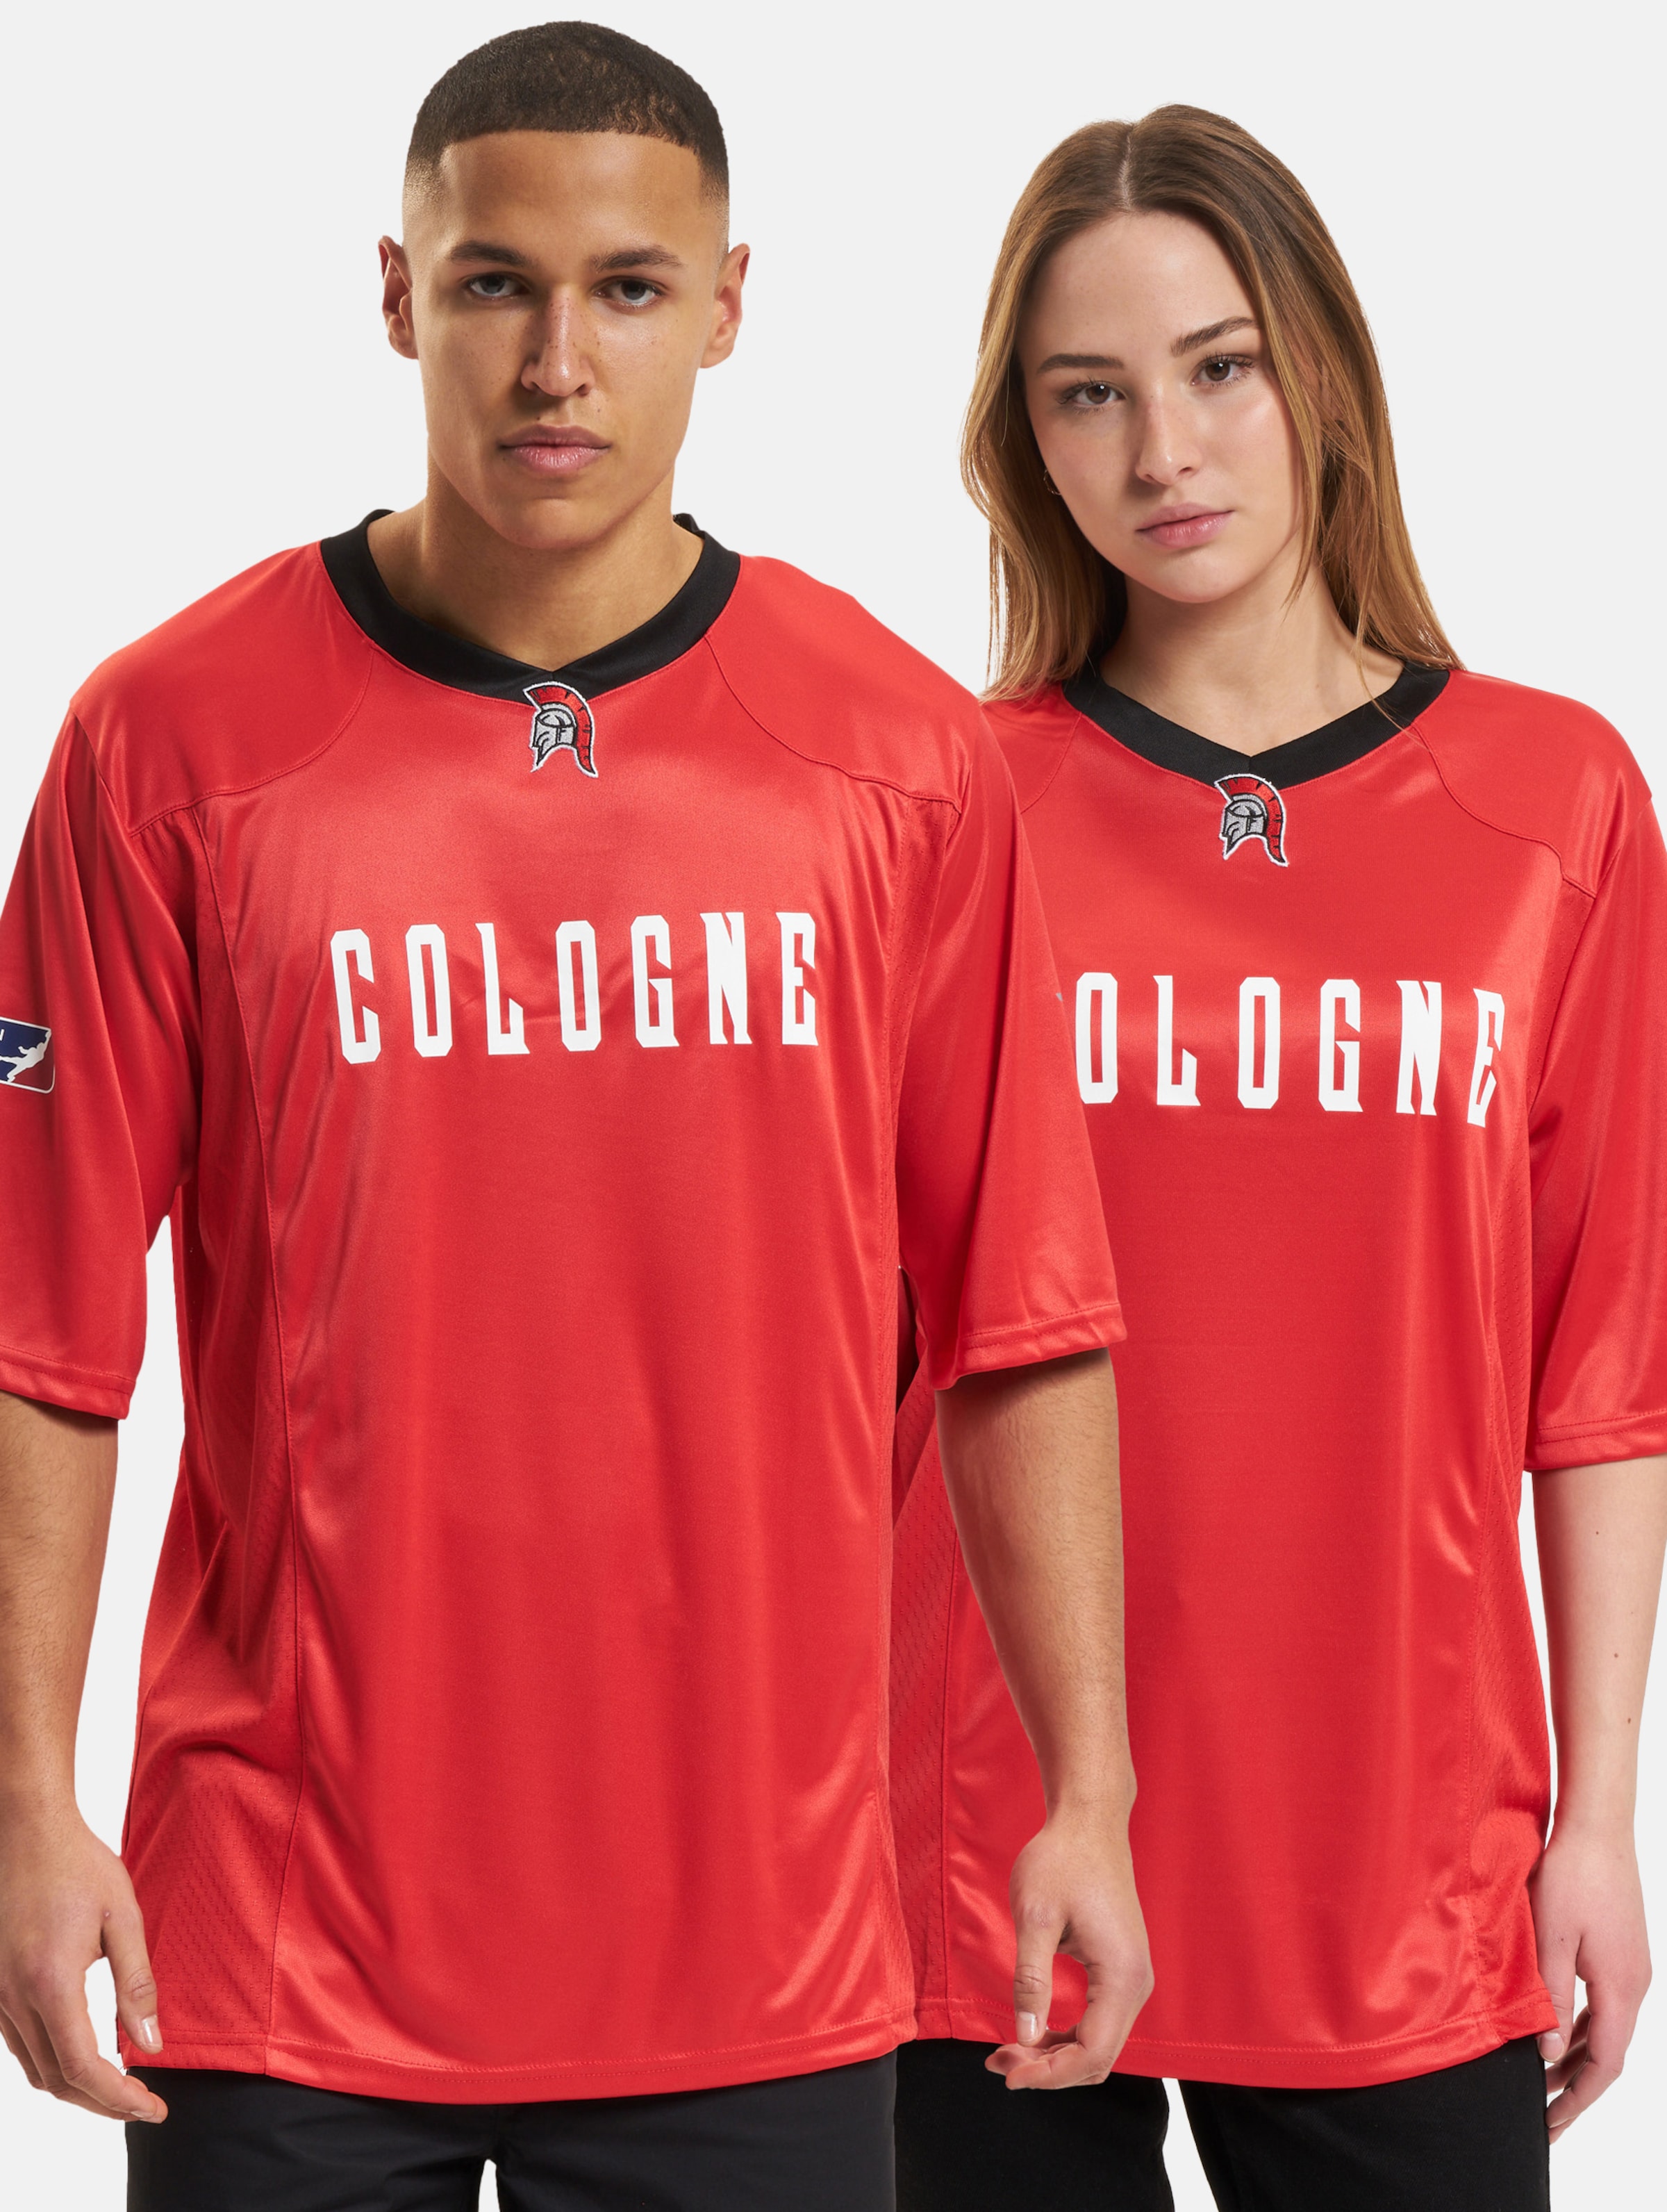 European League Of Football Cologne Centurions Authentic Game Jersey Frauen,Männer,Unisex op kleur rood, Maat XL